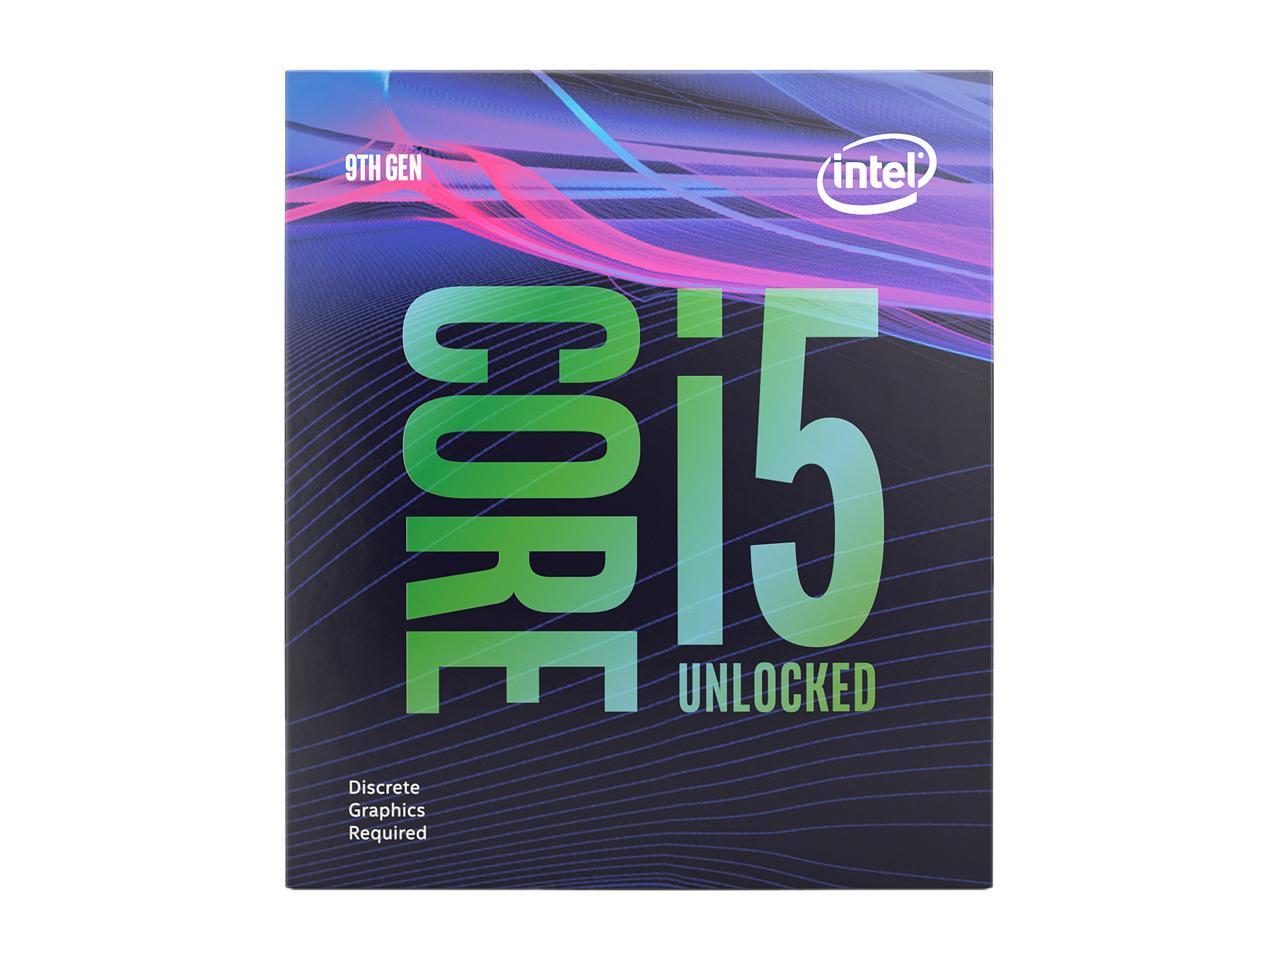 پردازنده Intel Core i5 9600KF را با کمتر از 200 دلار تهیه کنید